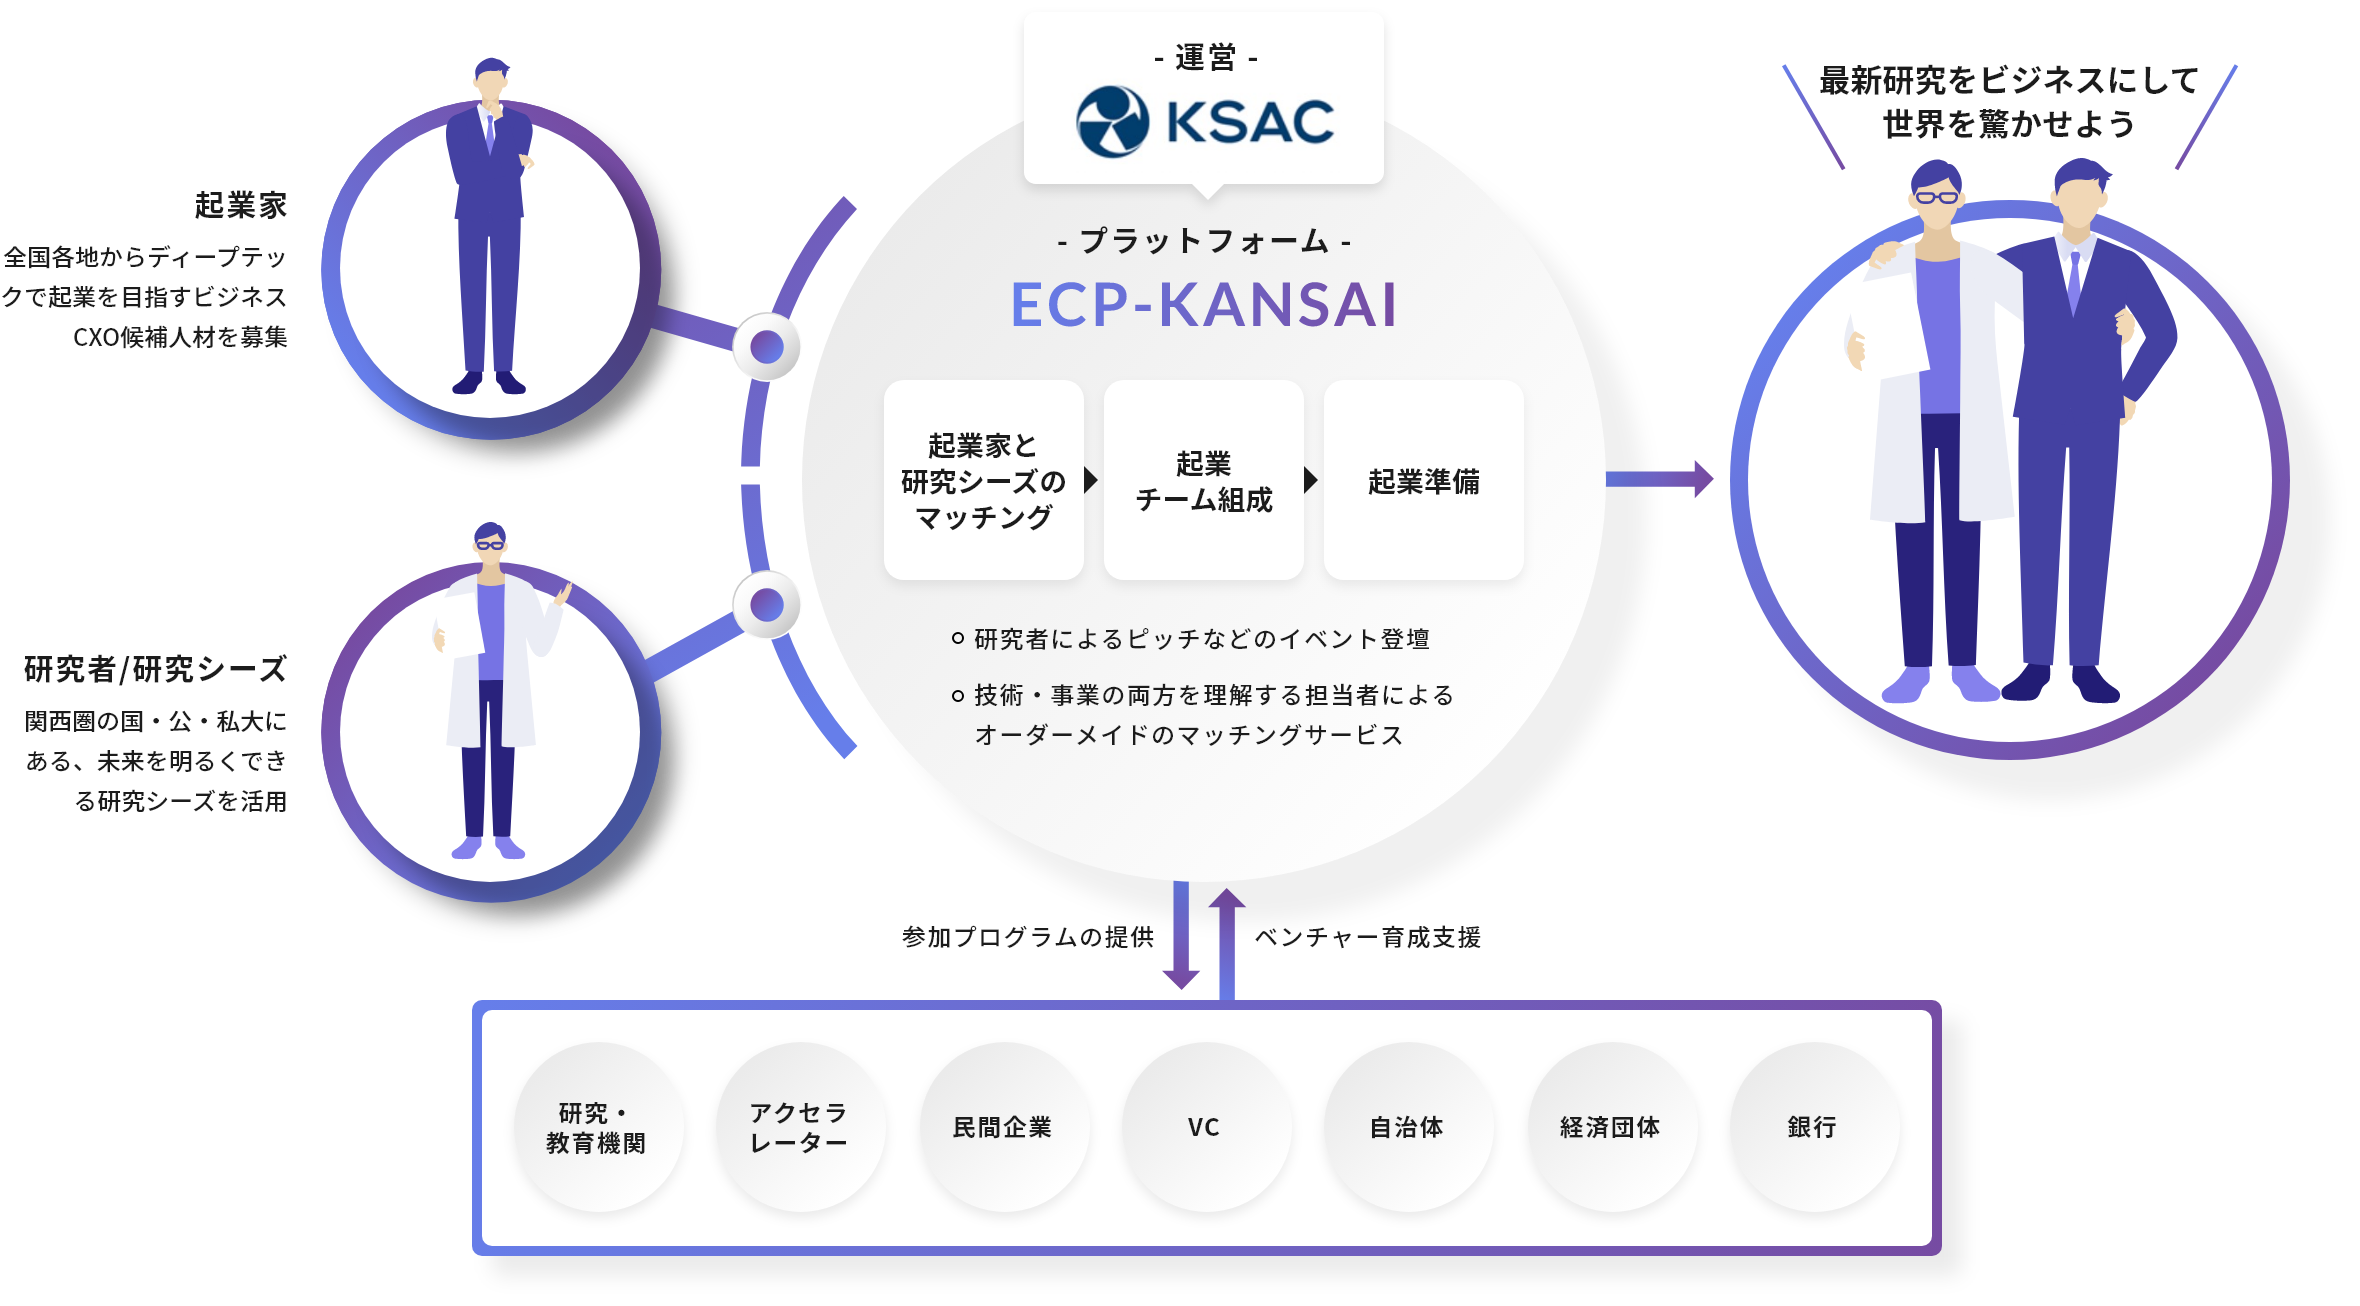 起業家と研究シーズのマッチング、企業チーム組成、起業準備まで。プラットフォーム”ECP-KANSAI”